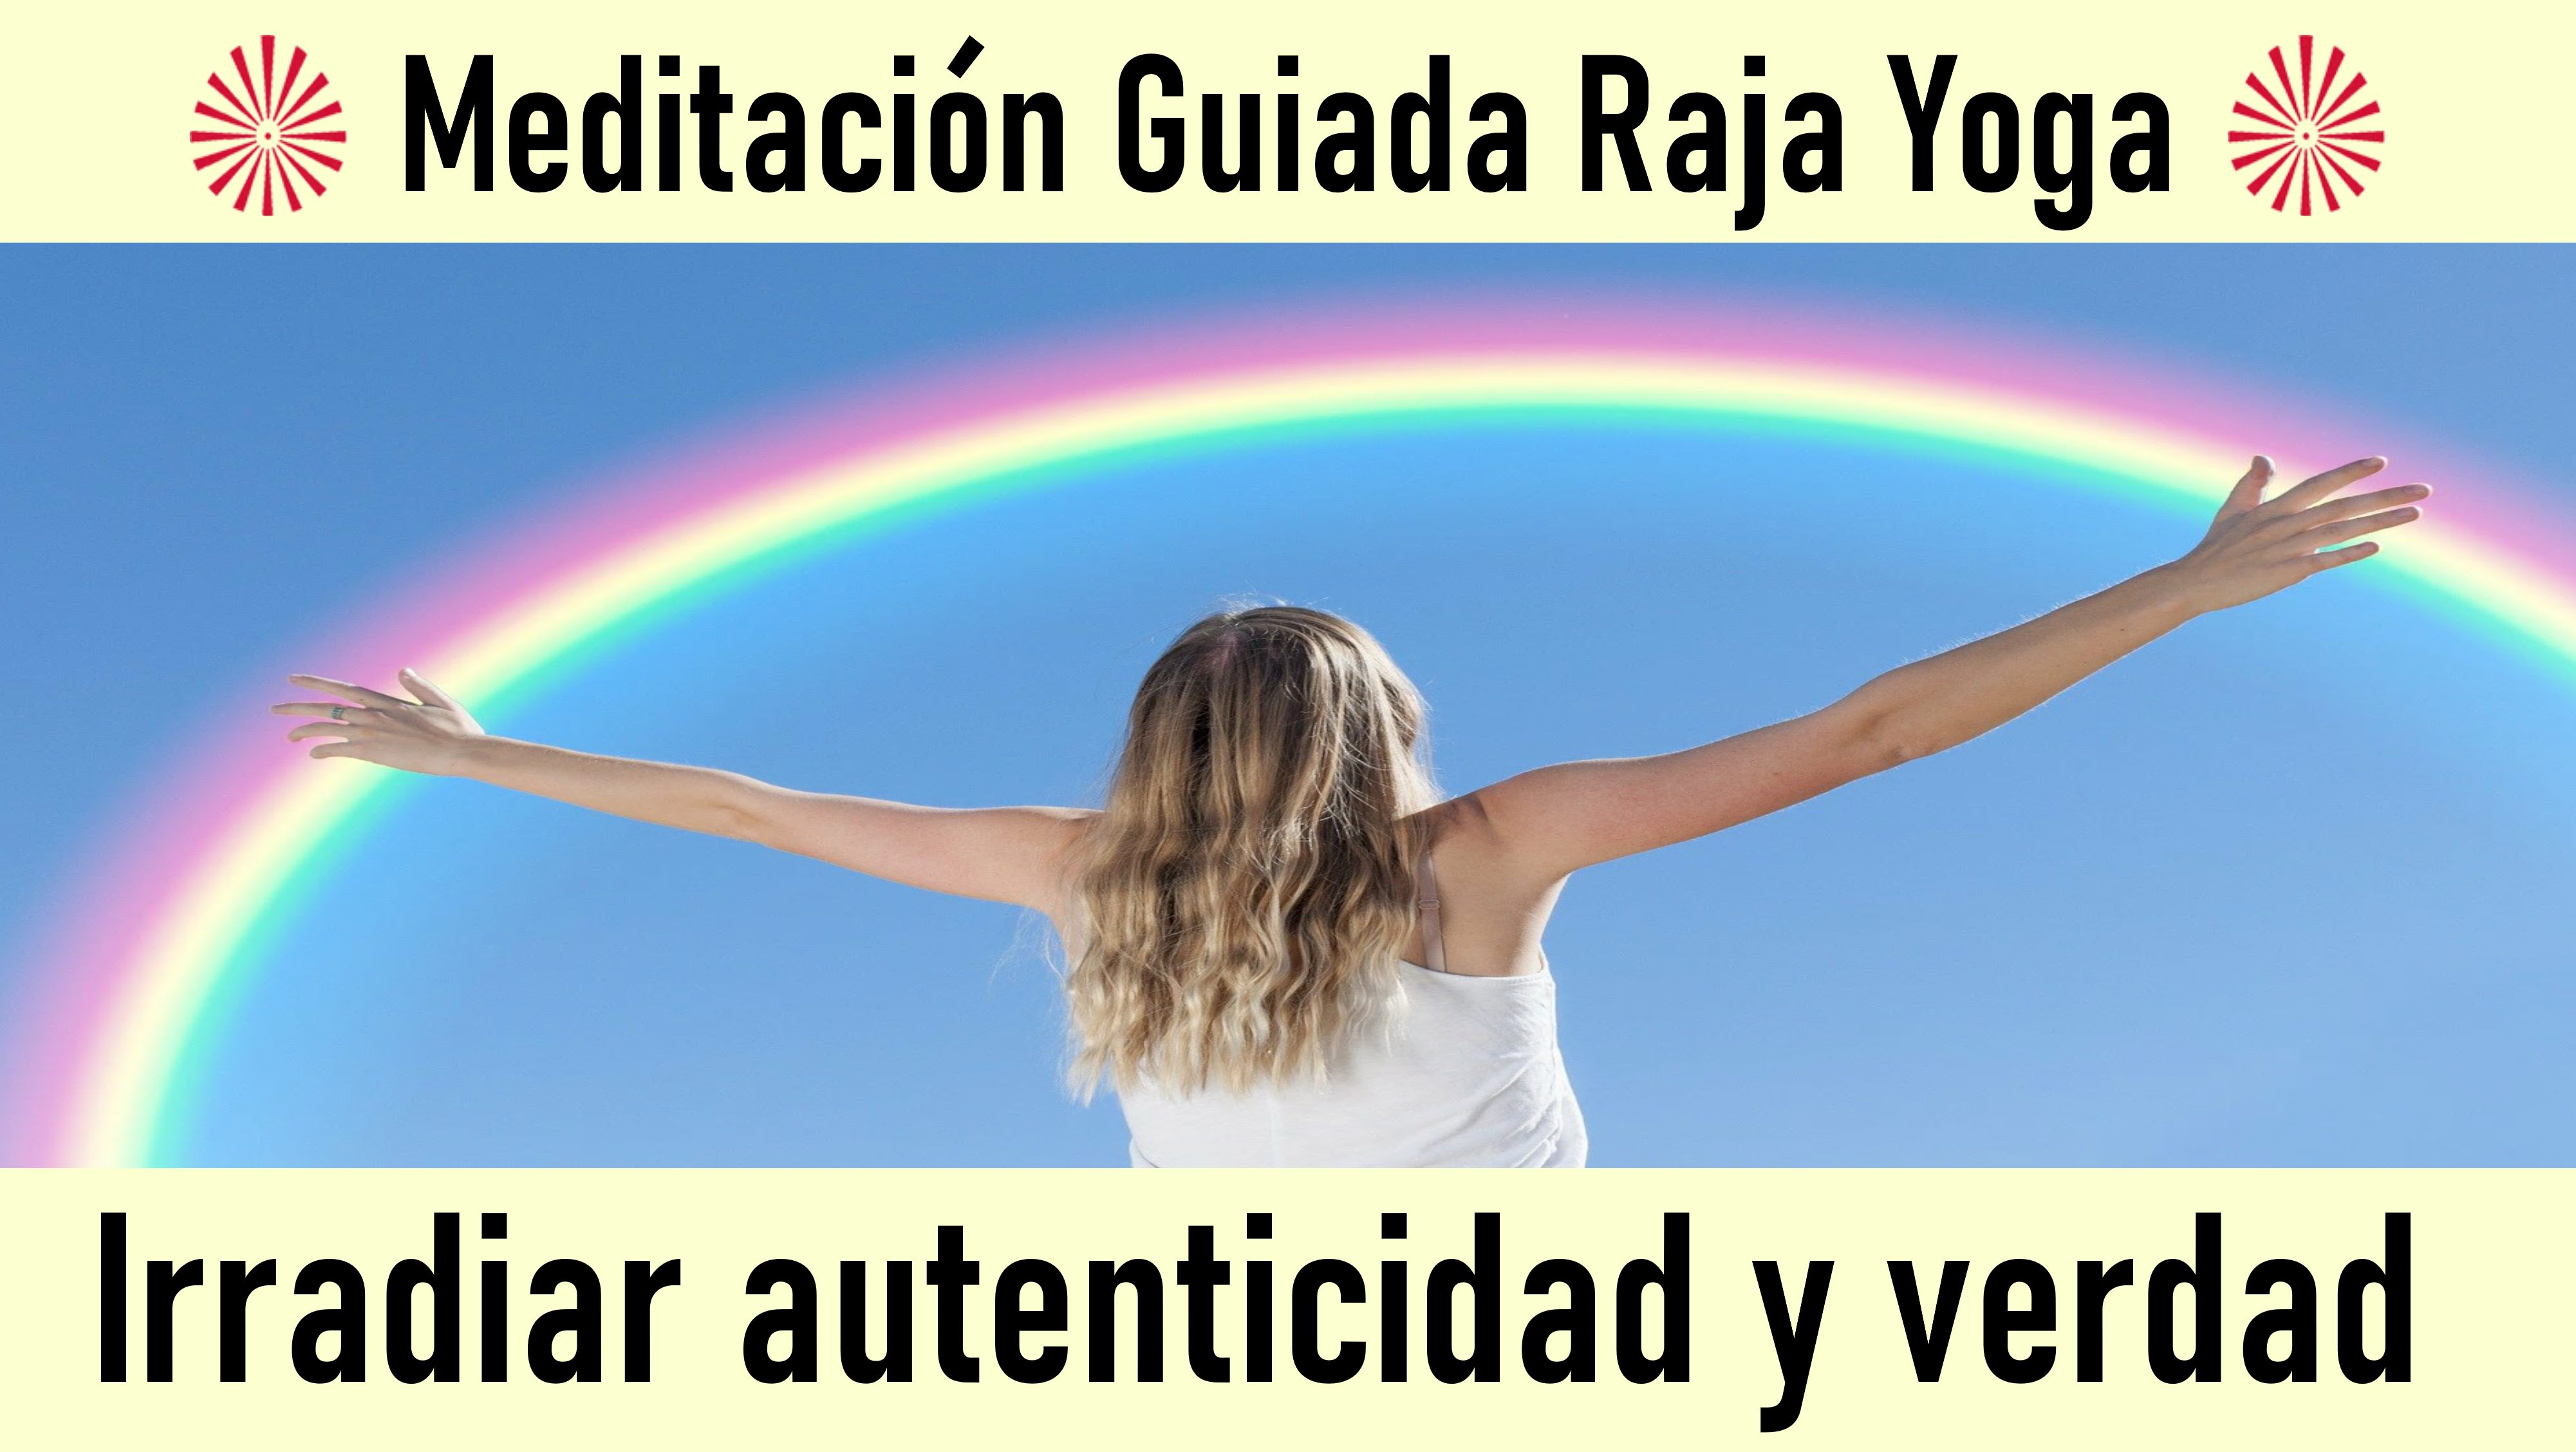 Meditación Raja Yoga: Irradiar autenticidad y verdad (31 Mayo 2020) On-line desde Valencia